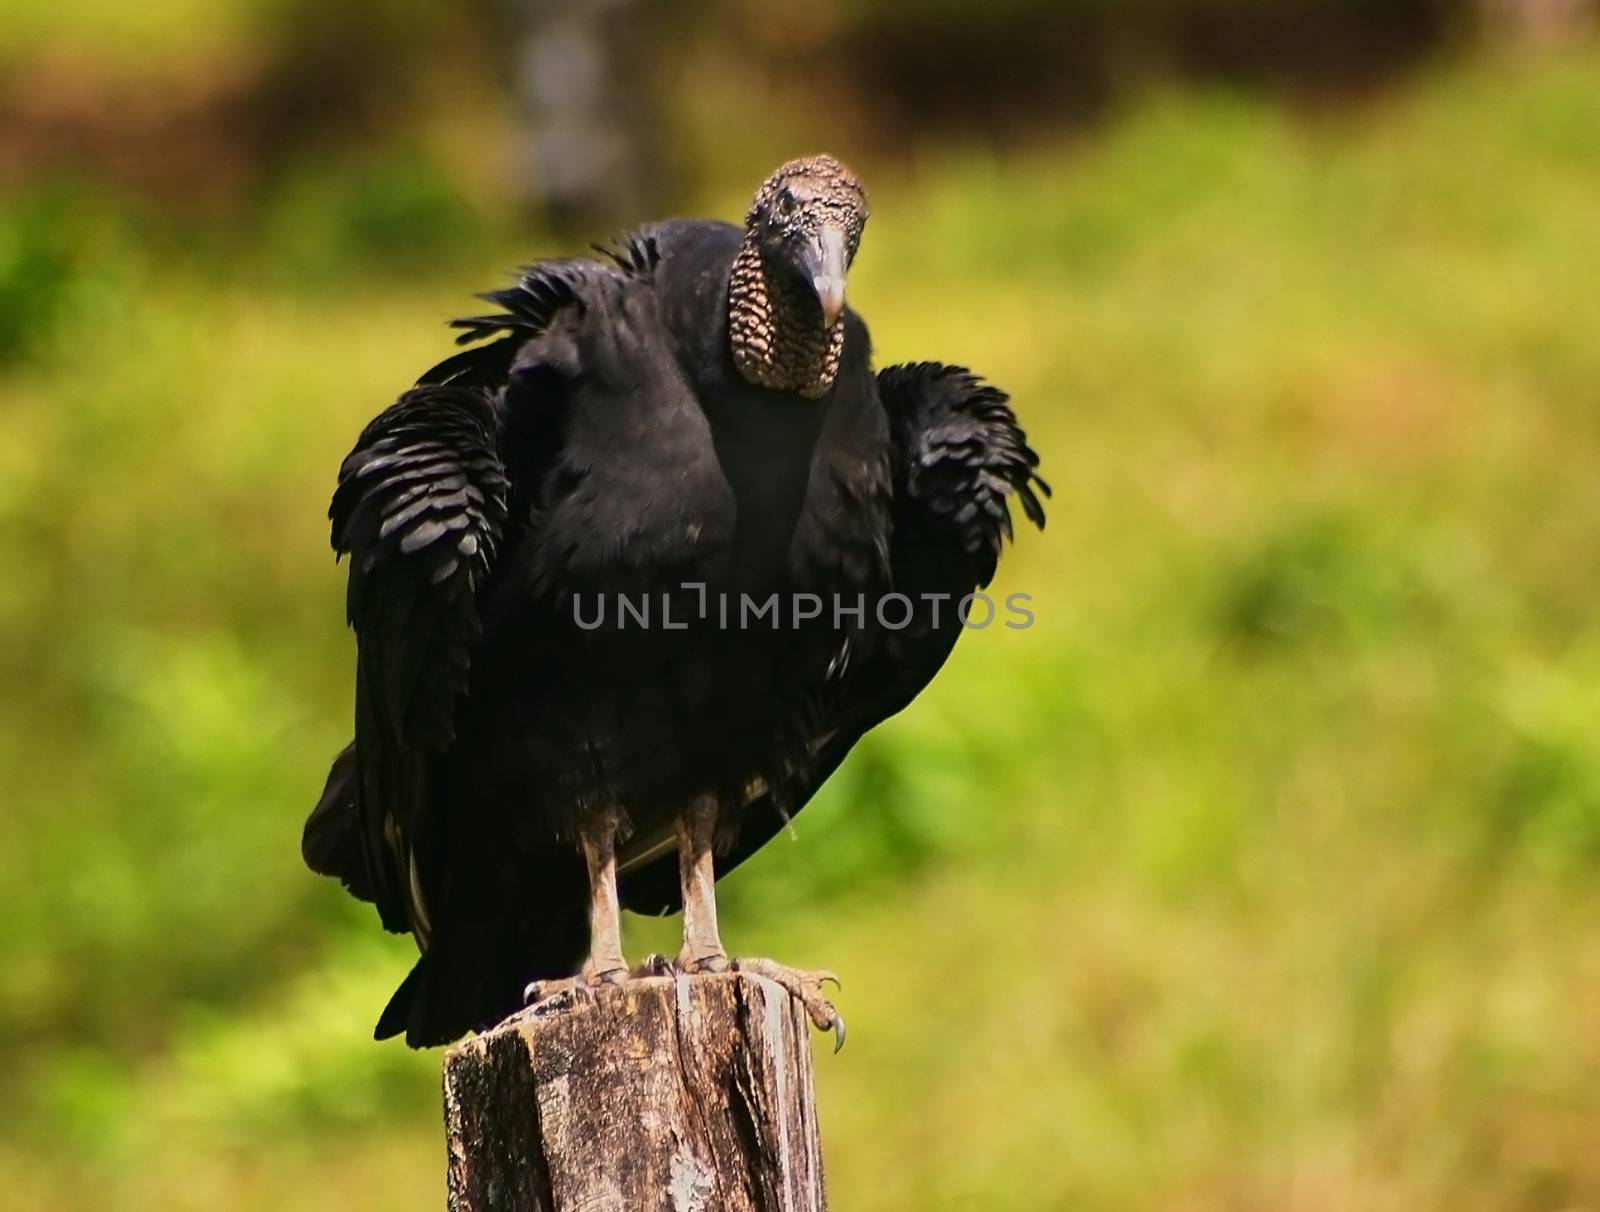 Turkey vulture eyes the samera in a suspicious manner.